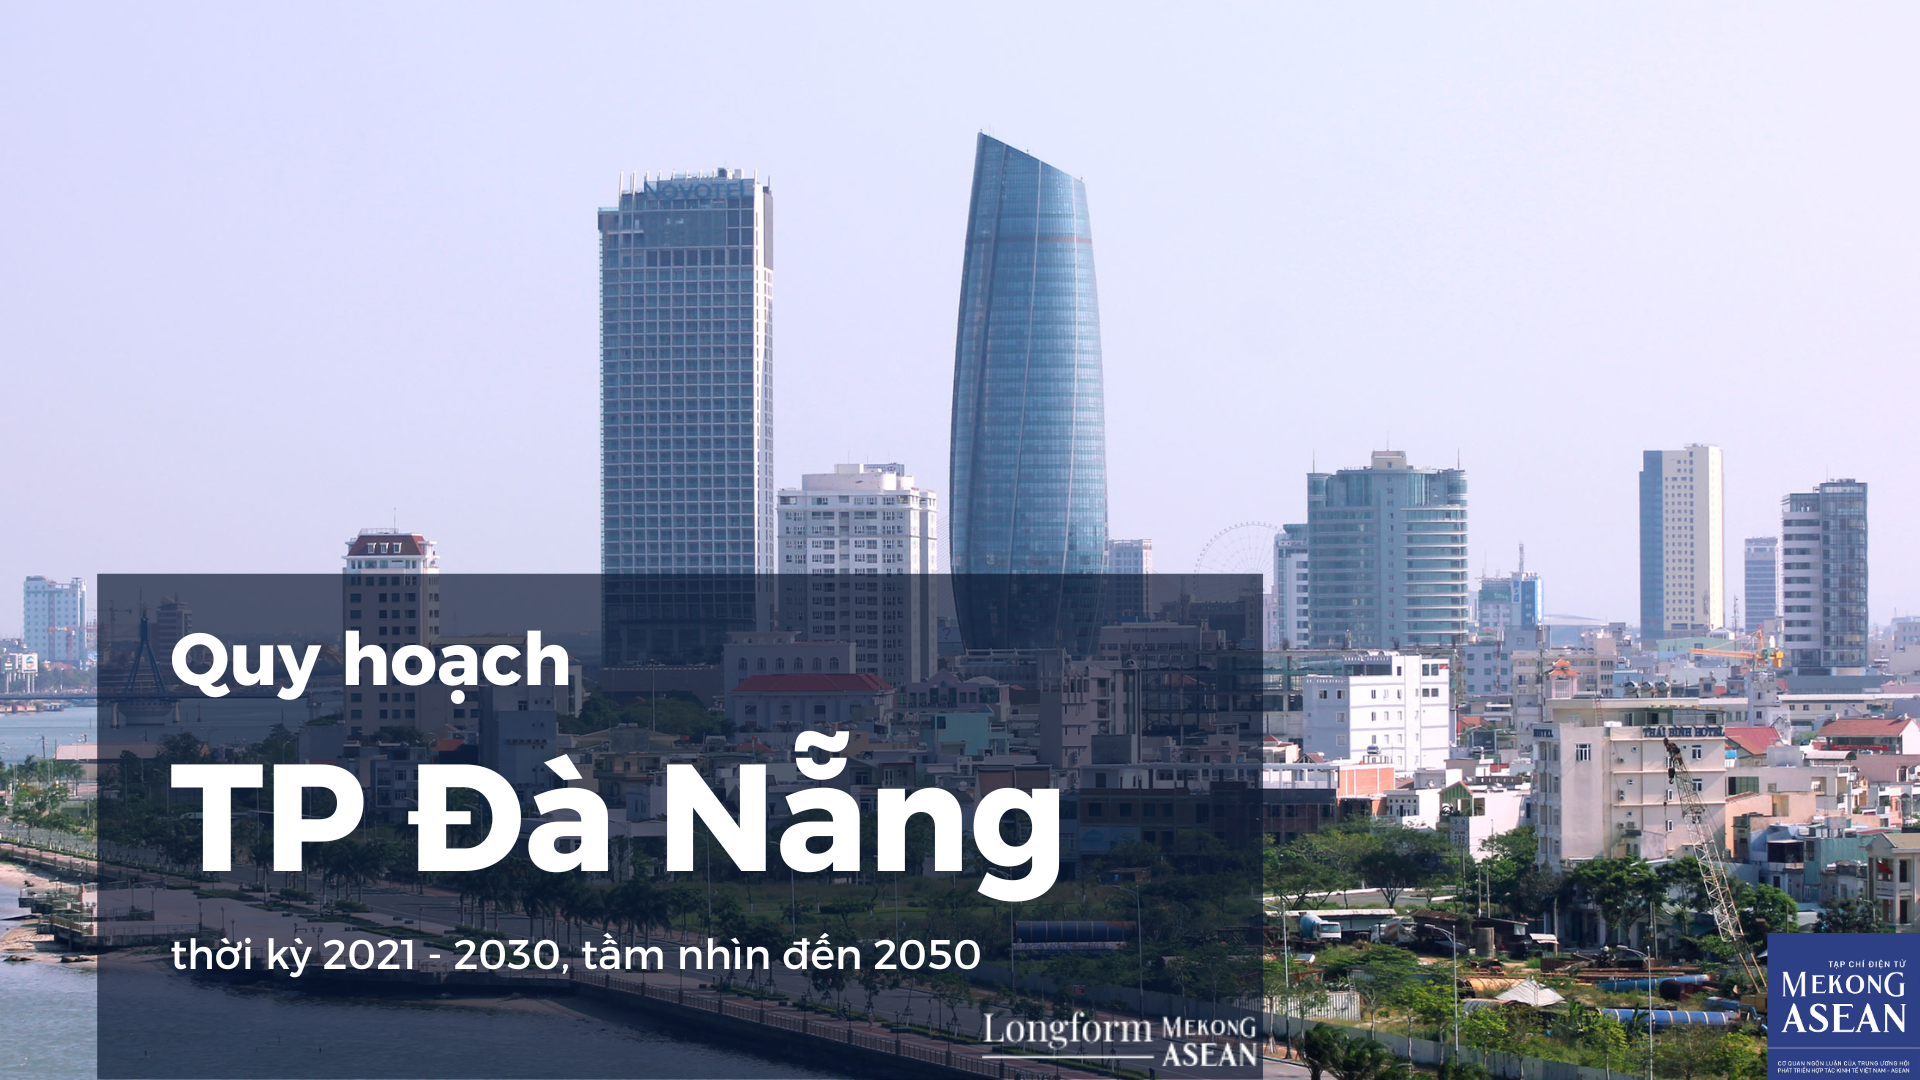 Quy hoạch Đà Nẵng: Trung tâm kinh tế biển, cửa ngõ ra khu vực ASEAN và quốc tế